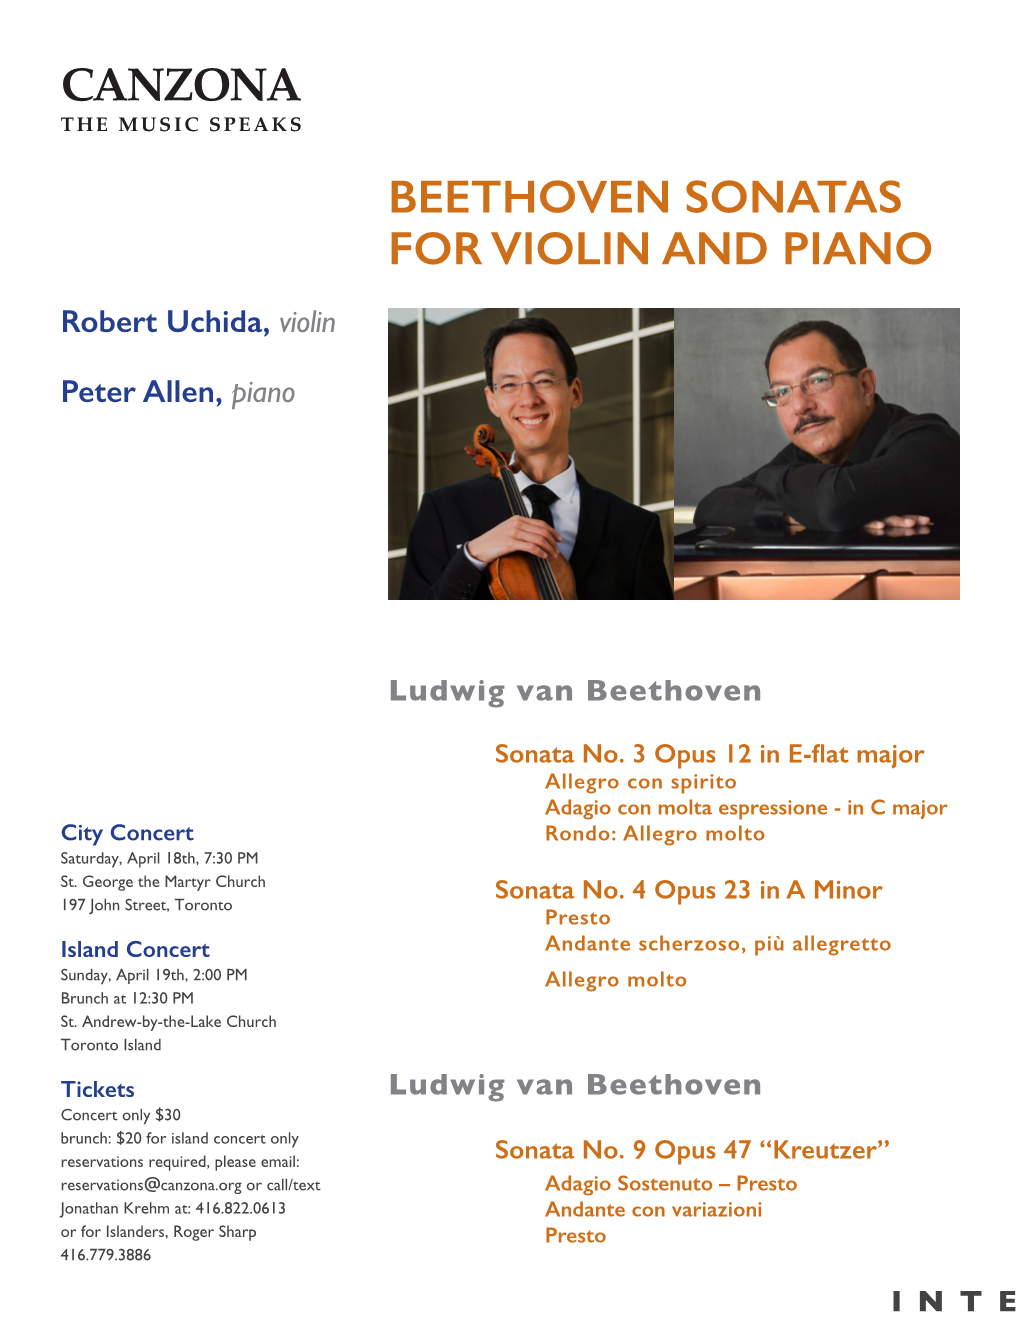 Canzona Beethoven Sonatas for Violin and Piano